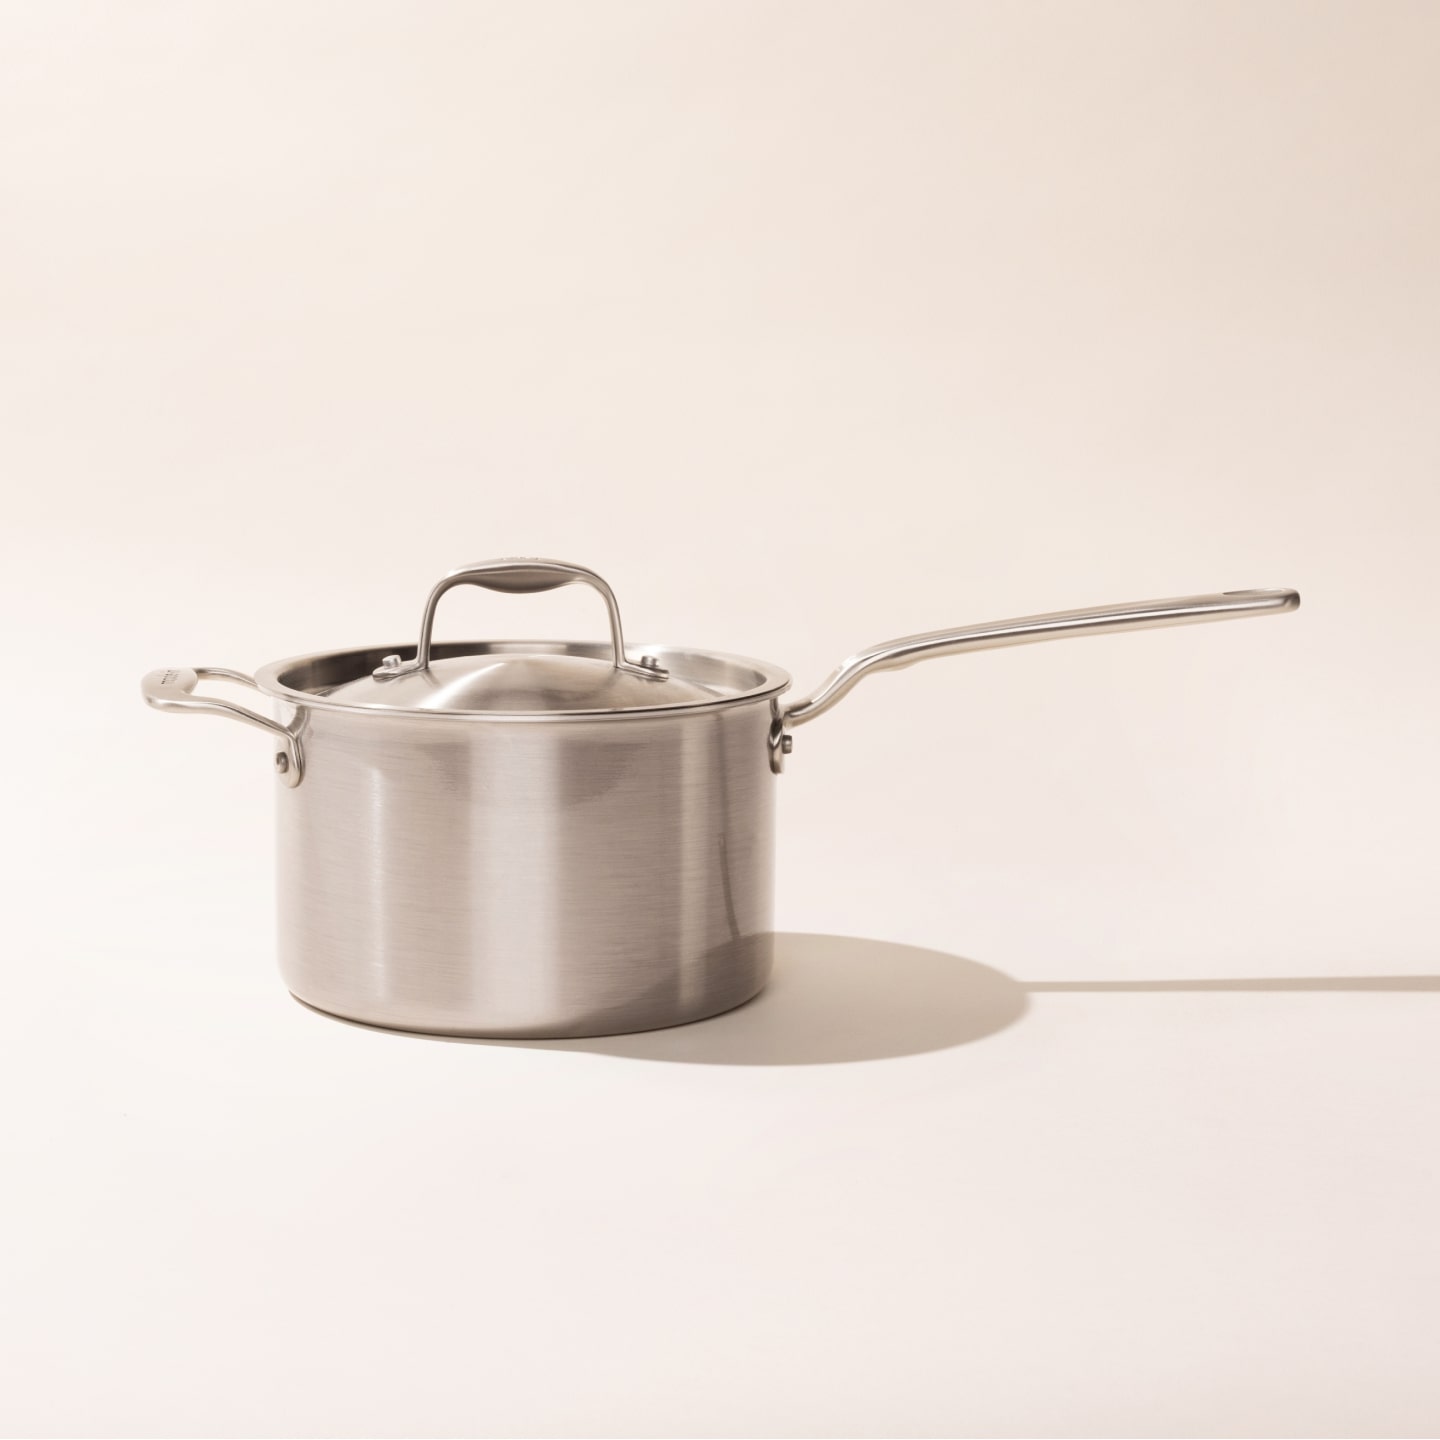 DC DICLASSE 7PCS Nonstick Cookware Set Kitchen Pots Pans with